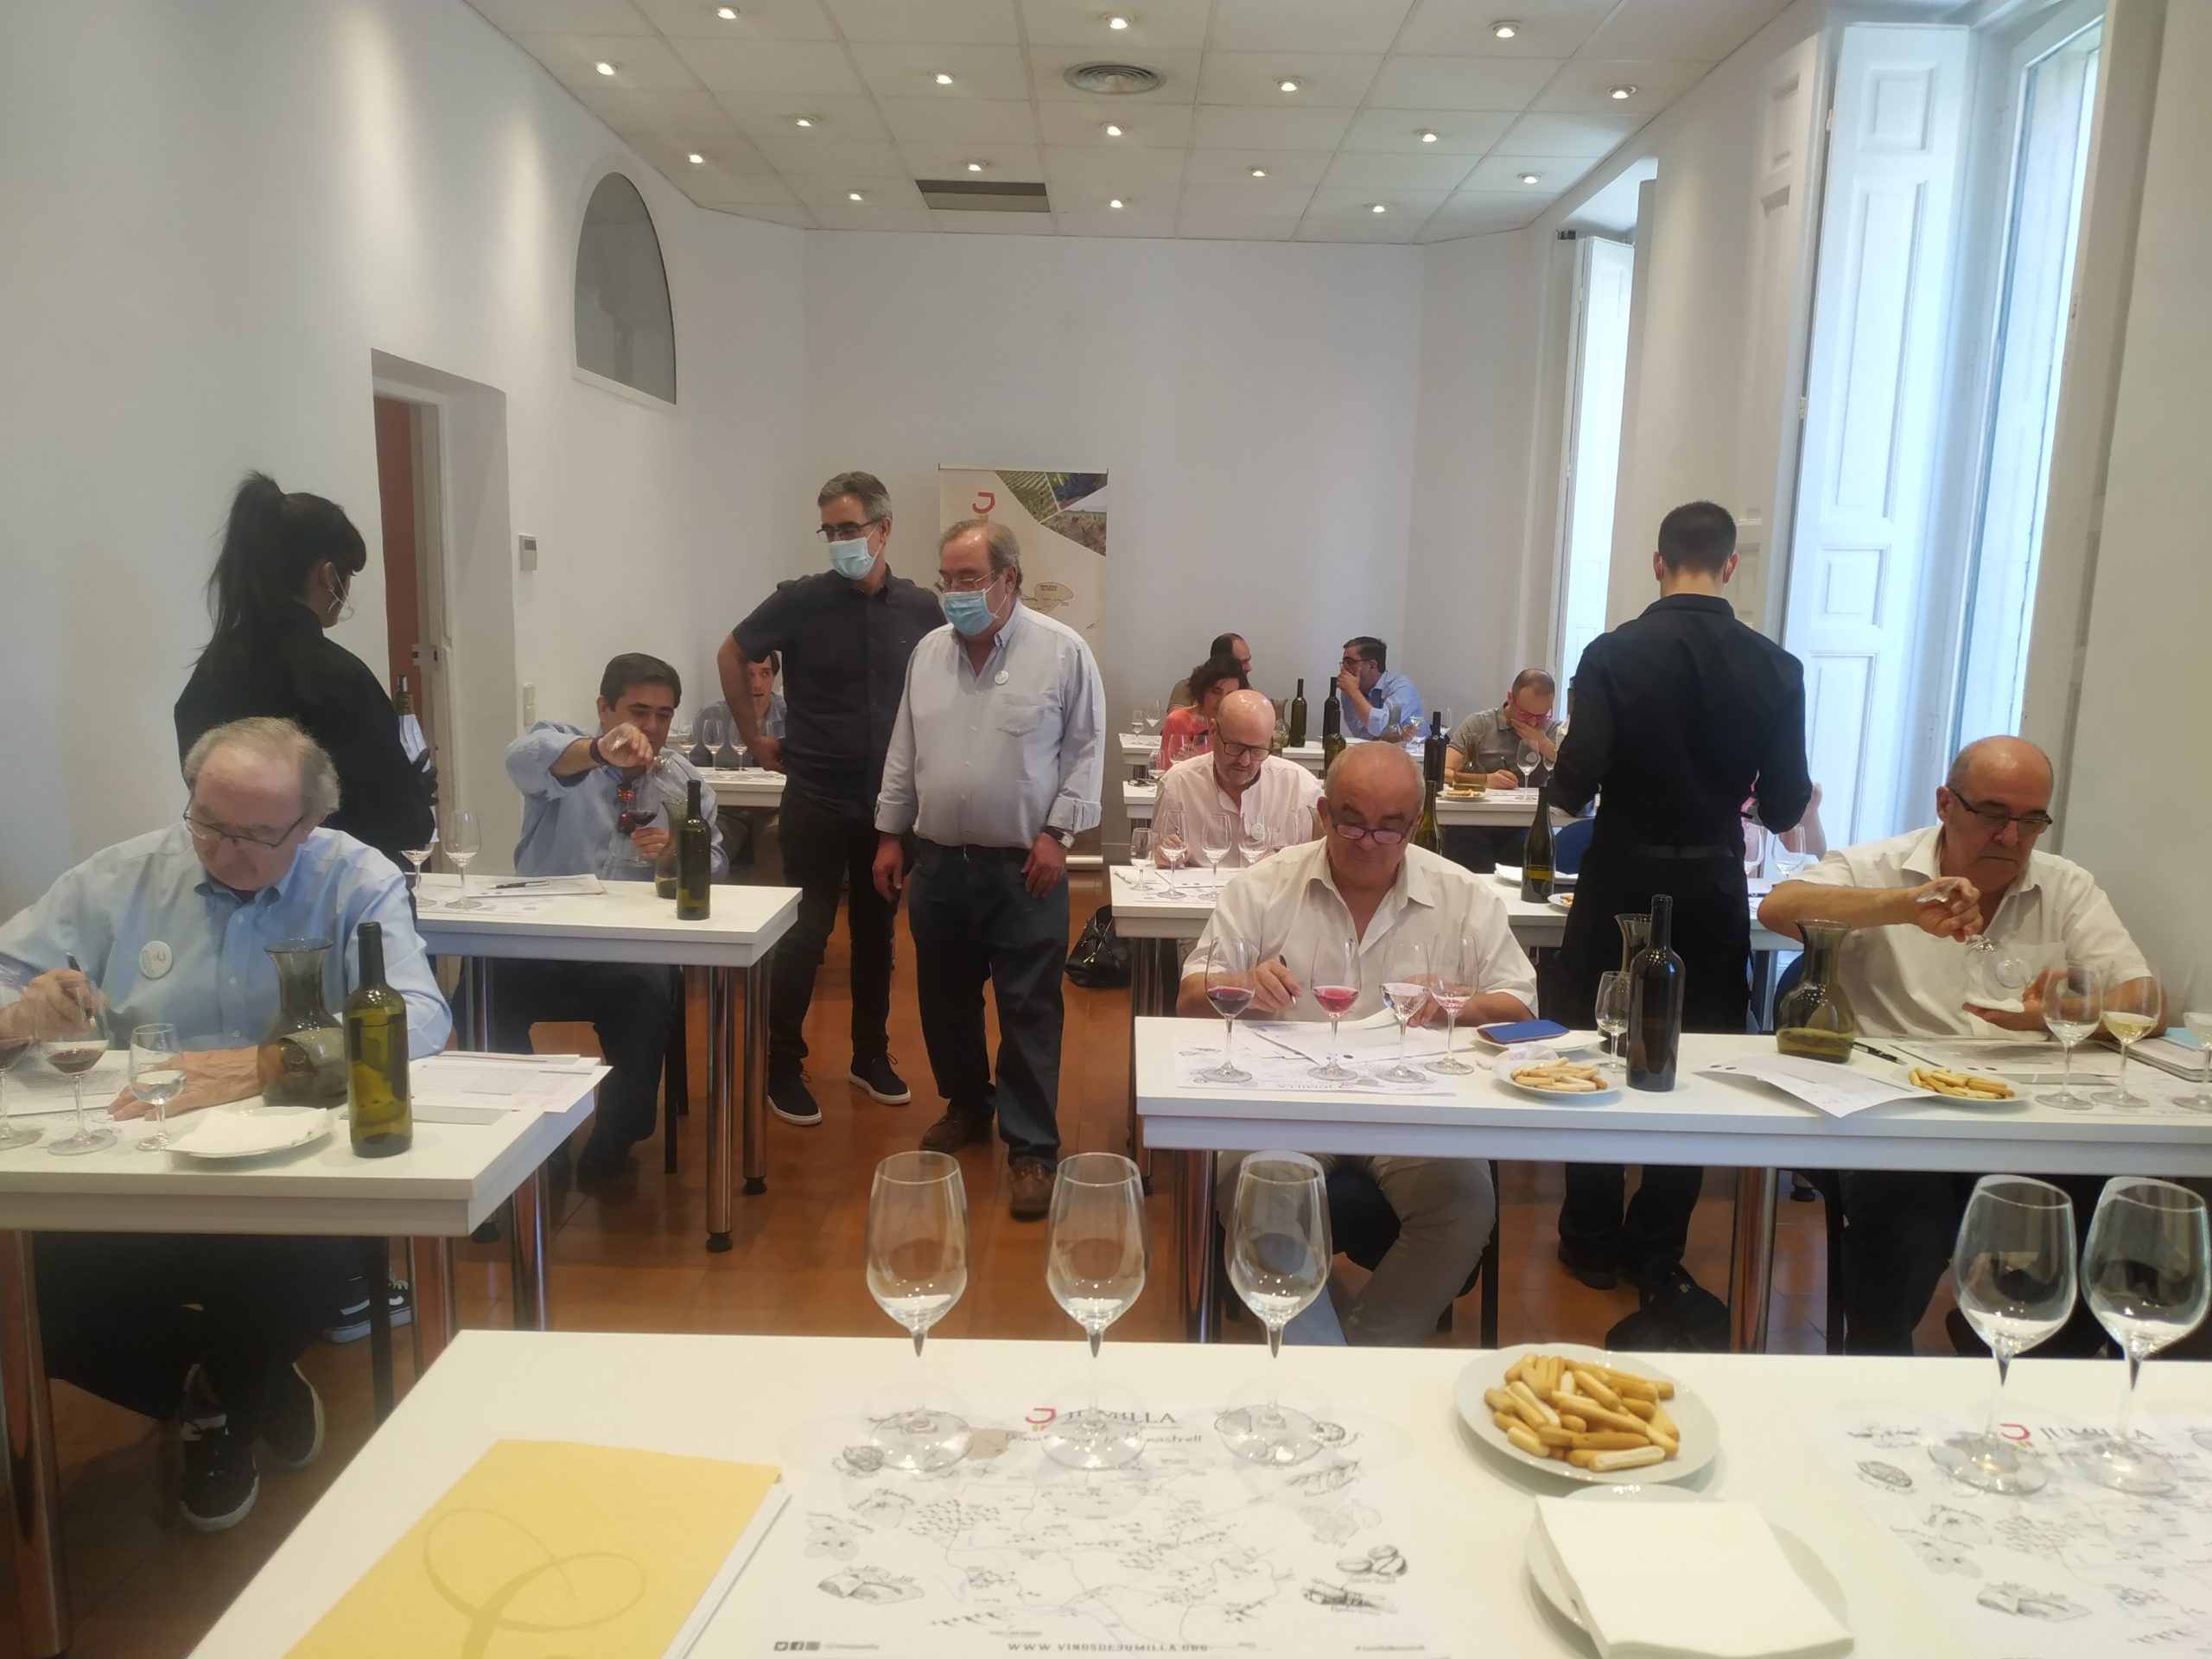 Un panel de expertos catadores deciden hoy en Madrid los premios del XXVI Certamen de Calidad de Vinos de la DOP Jumilla